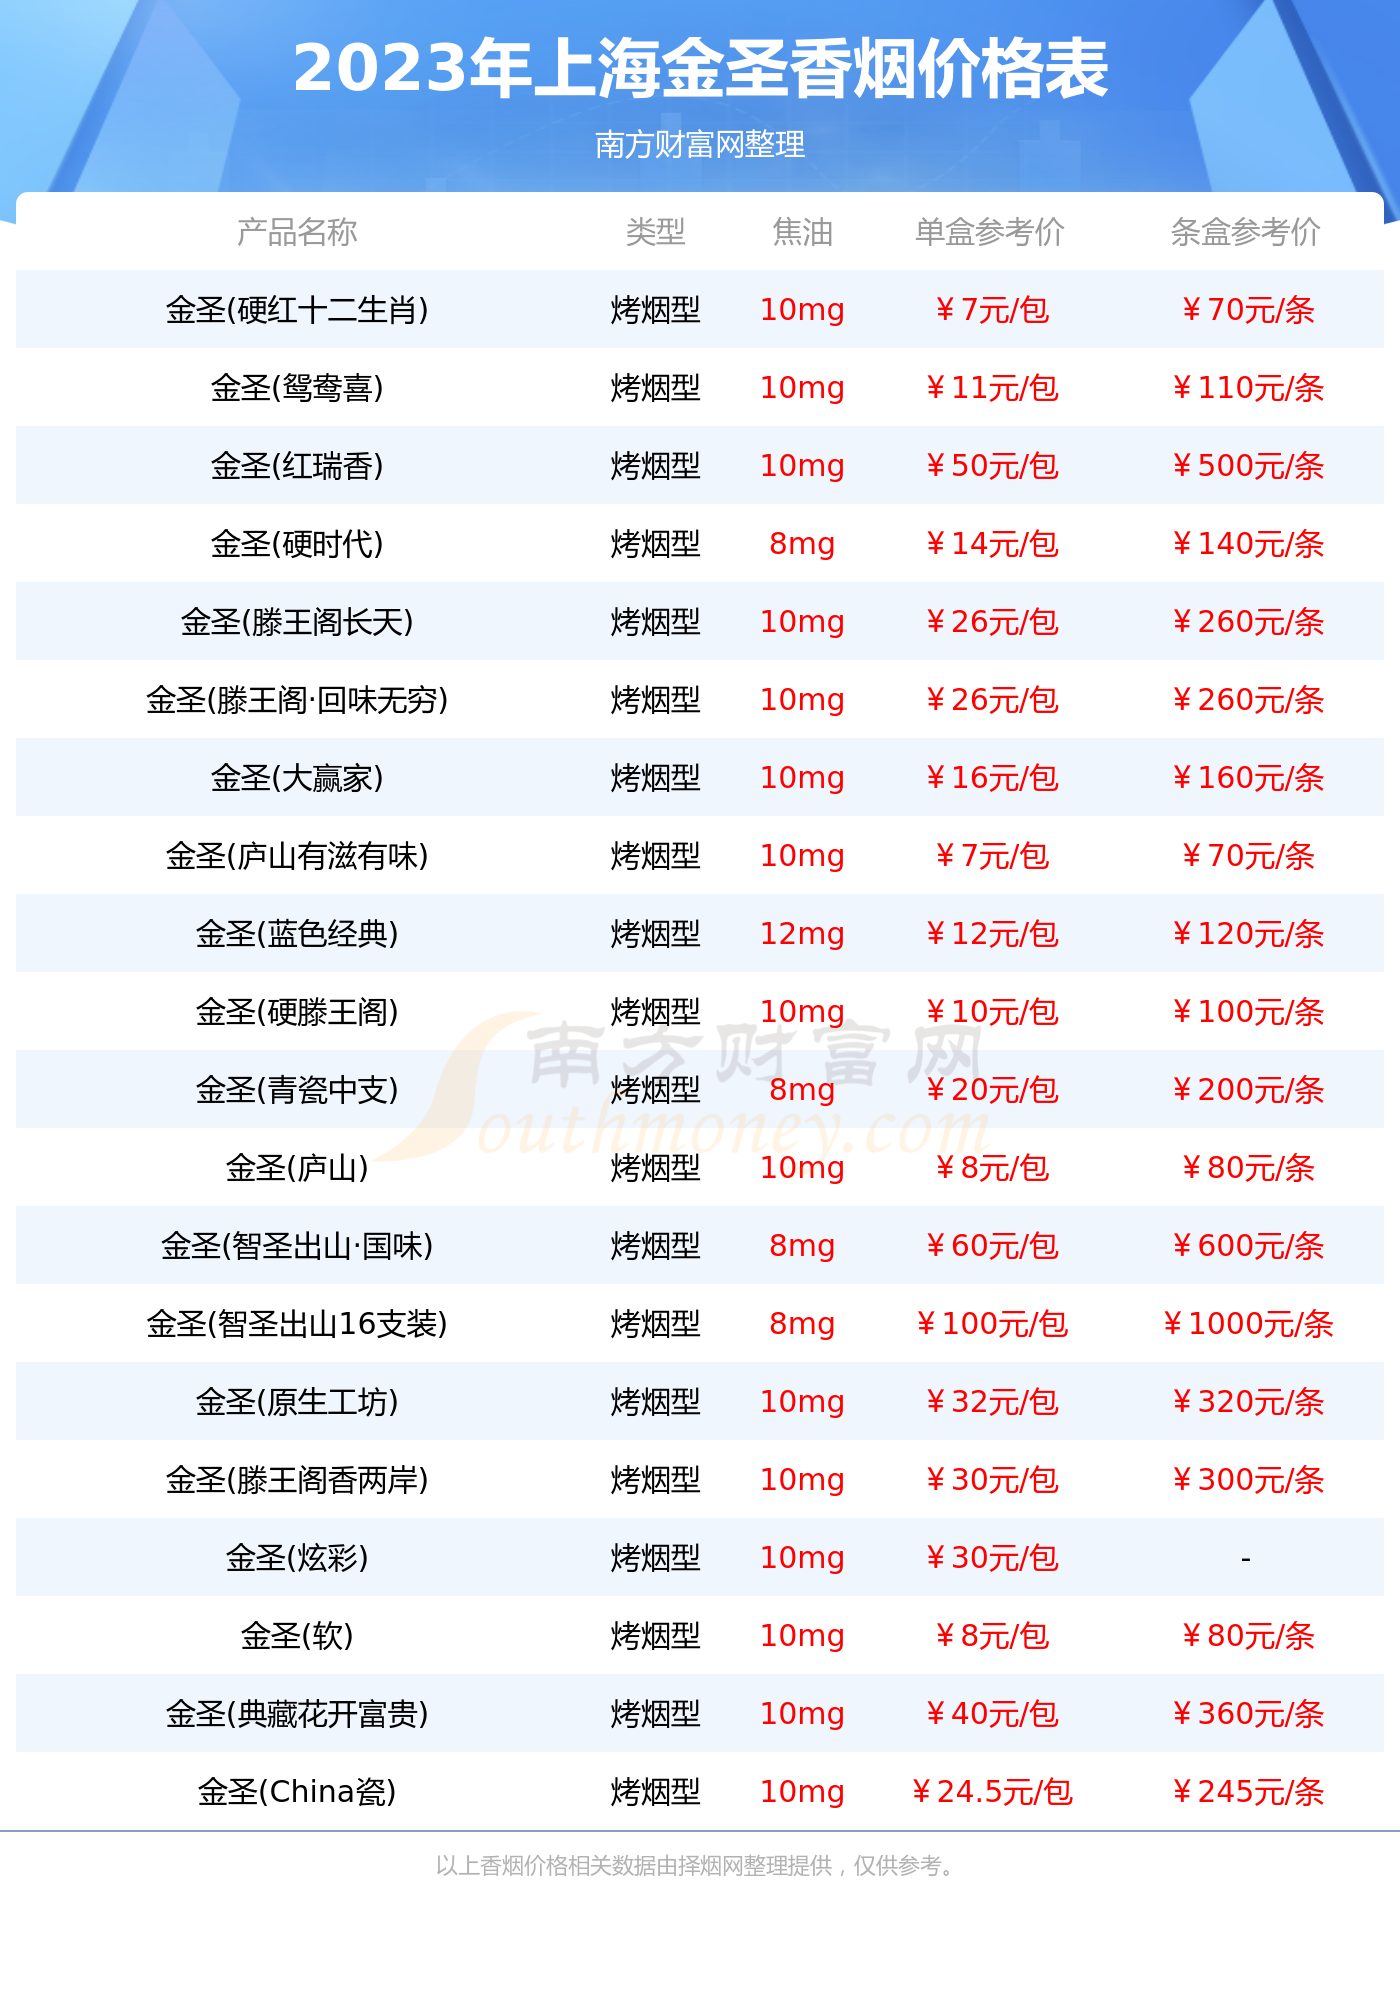 上海金圣香烟多少钱一条2023金圣香烟价格表